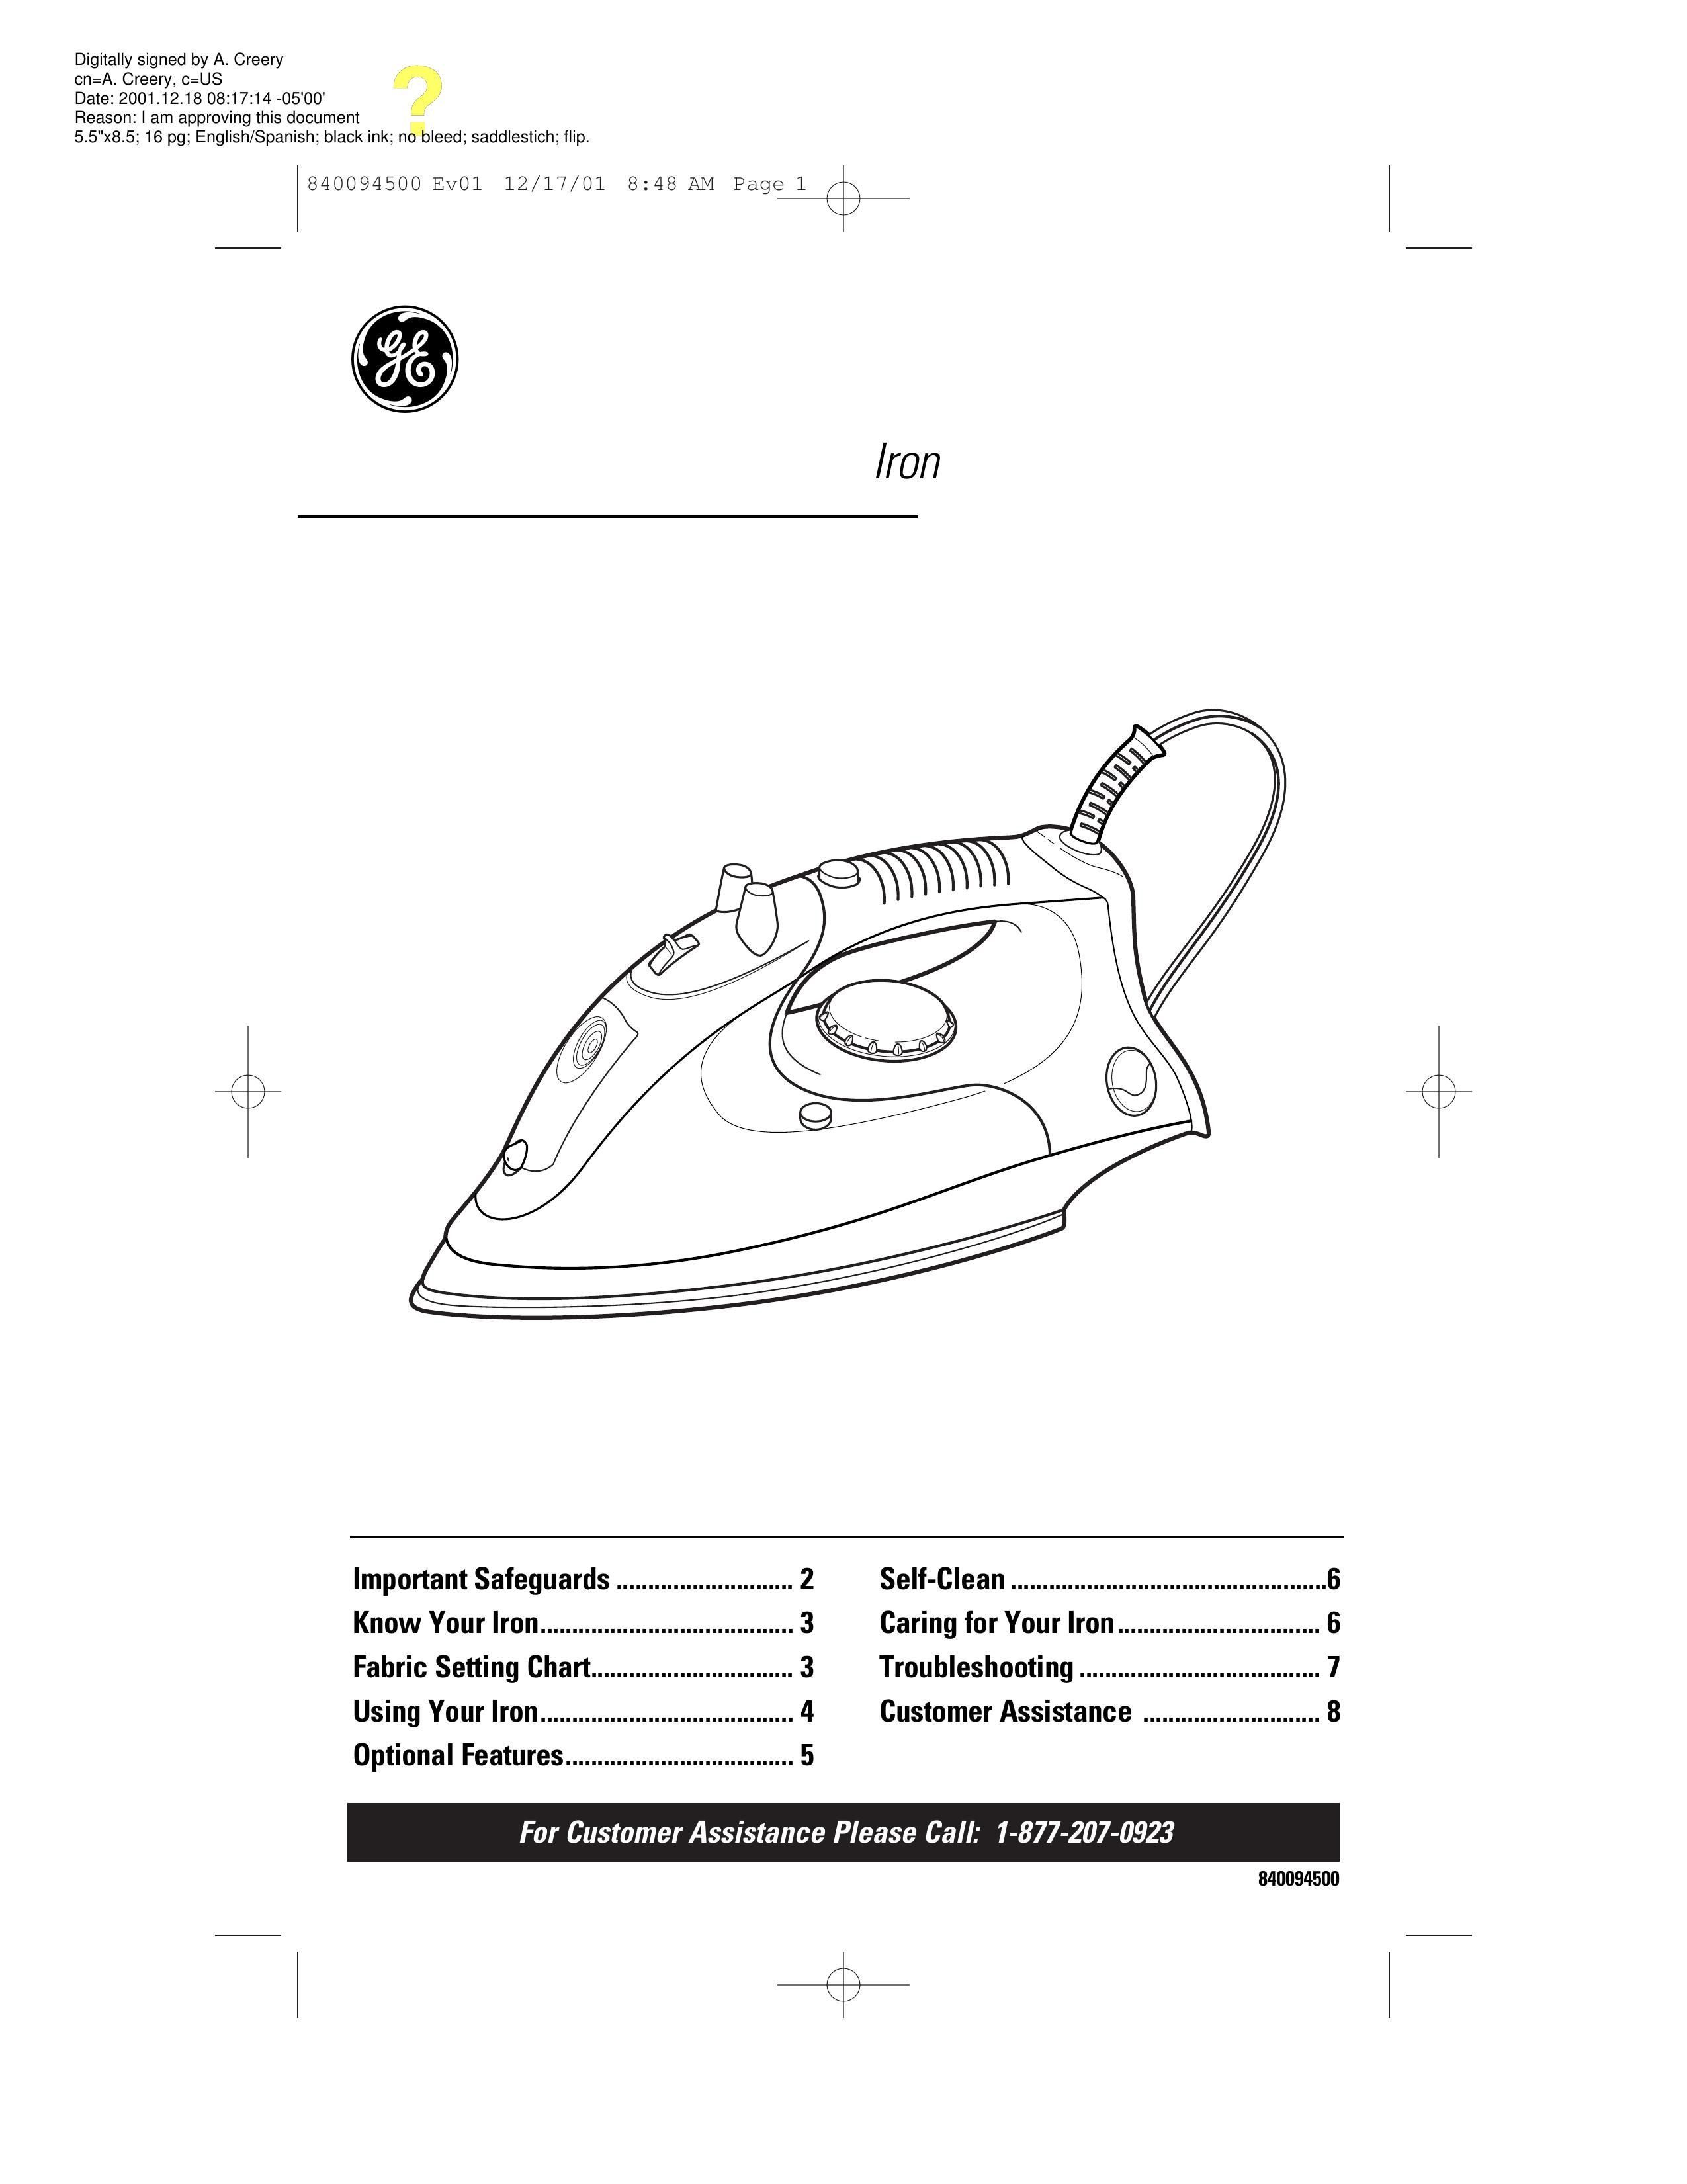 GE 106800 Iron User Manual